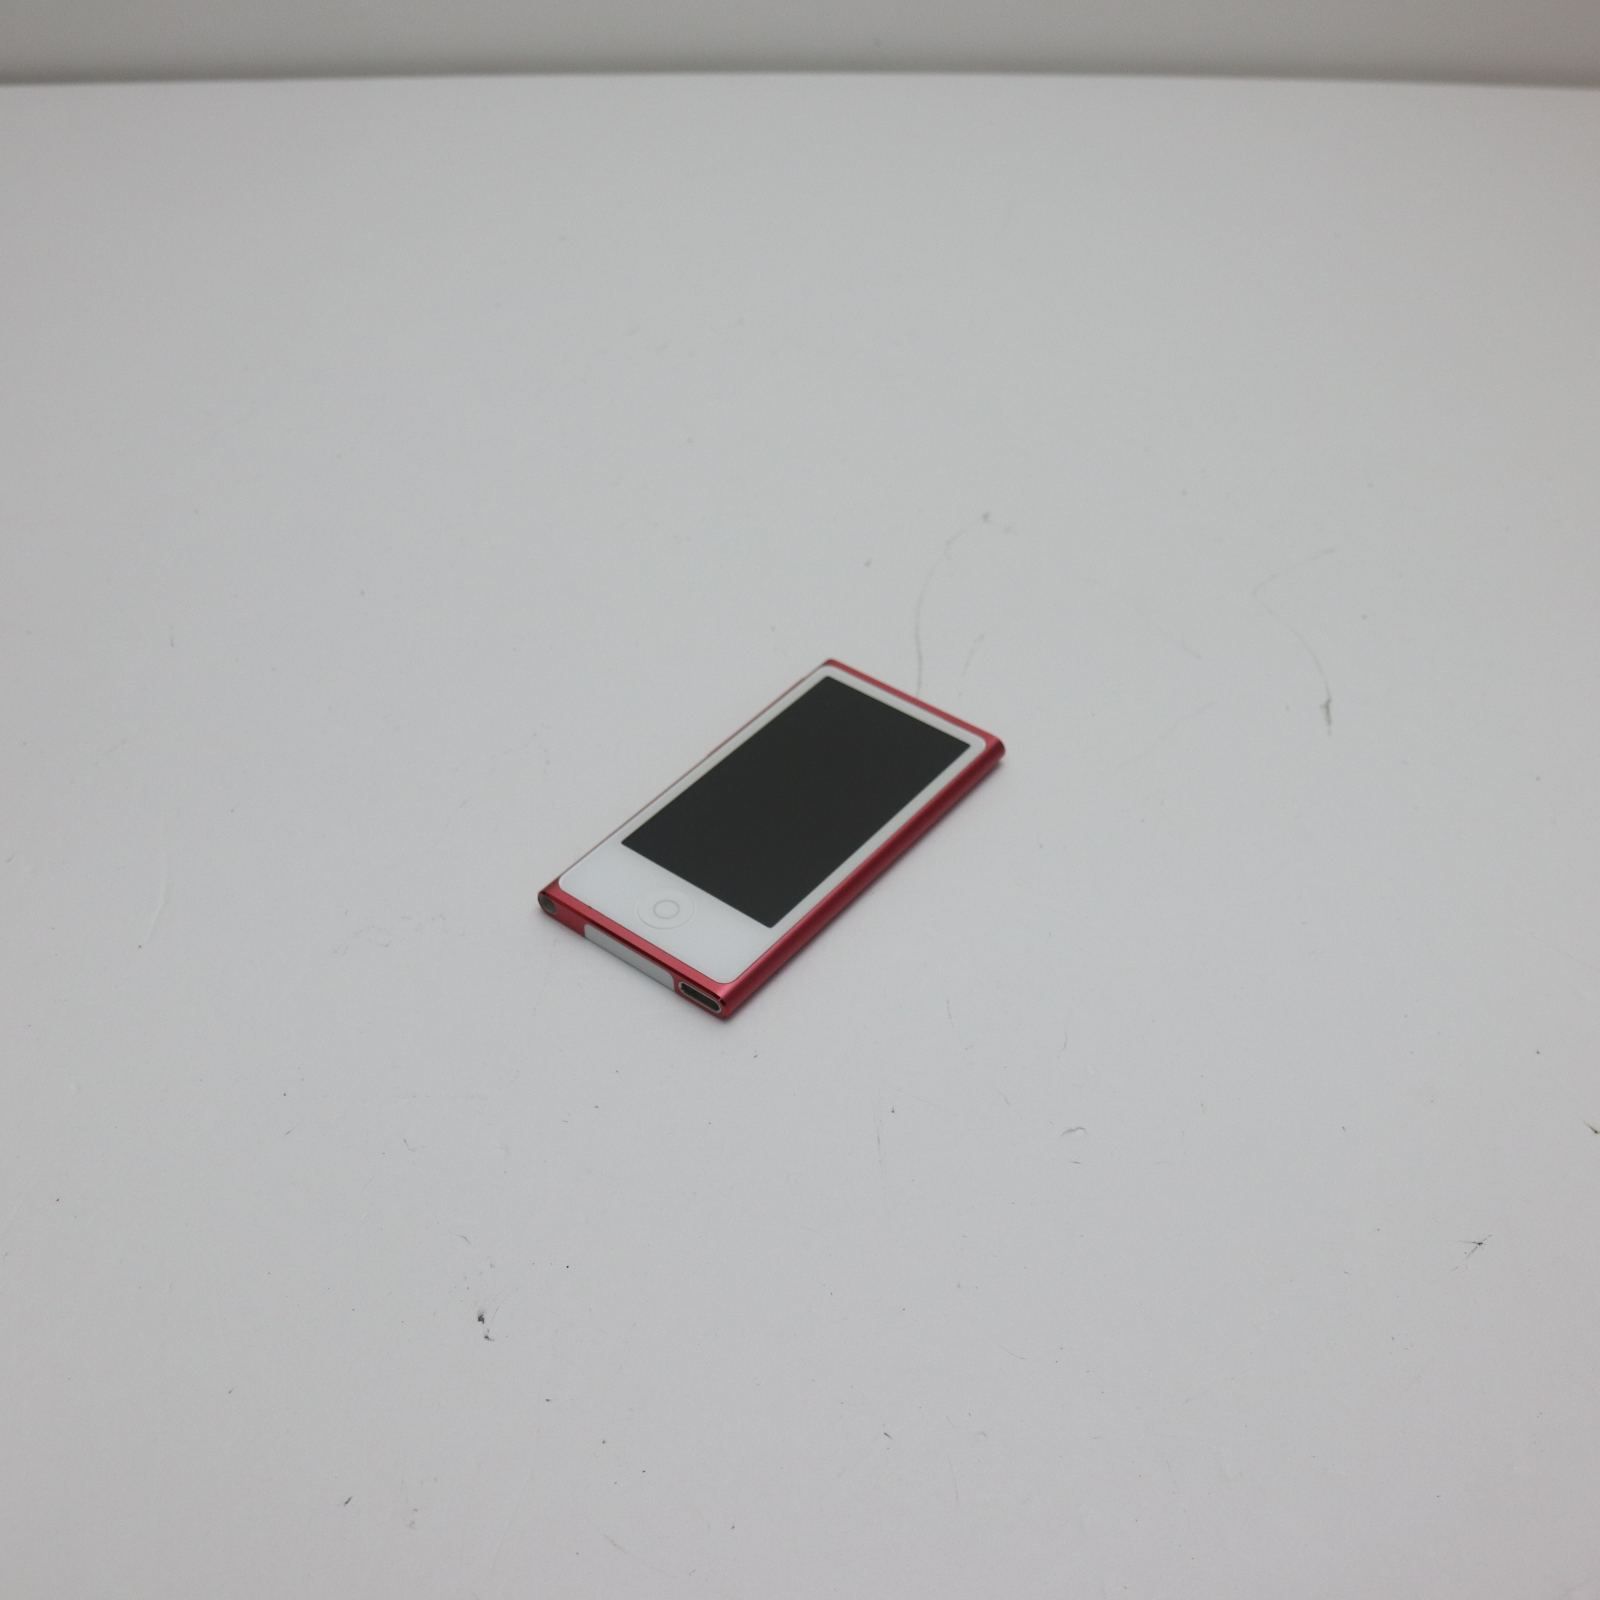 新品同様 iPod nano 第7世代 16GB ピンク 即日発送 MD475J/A MD475J/A